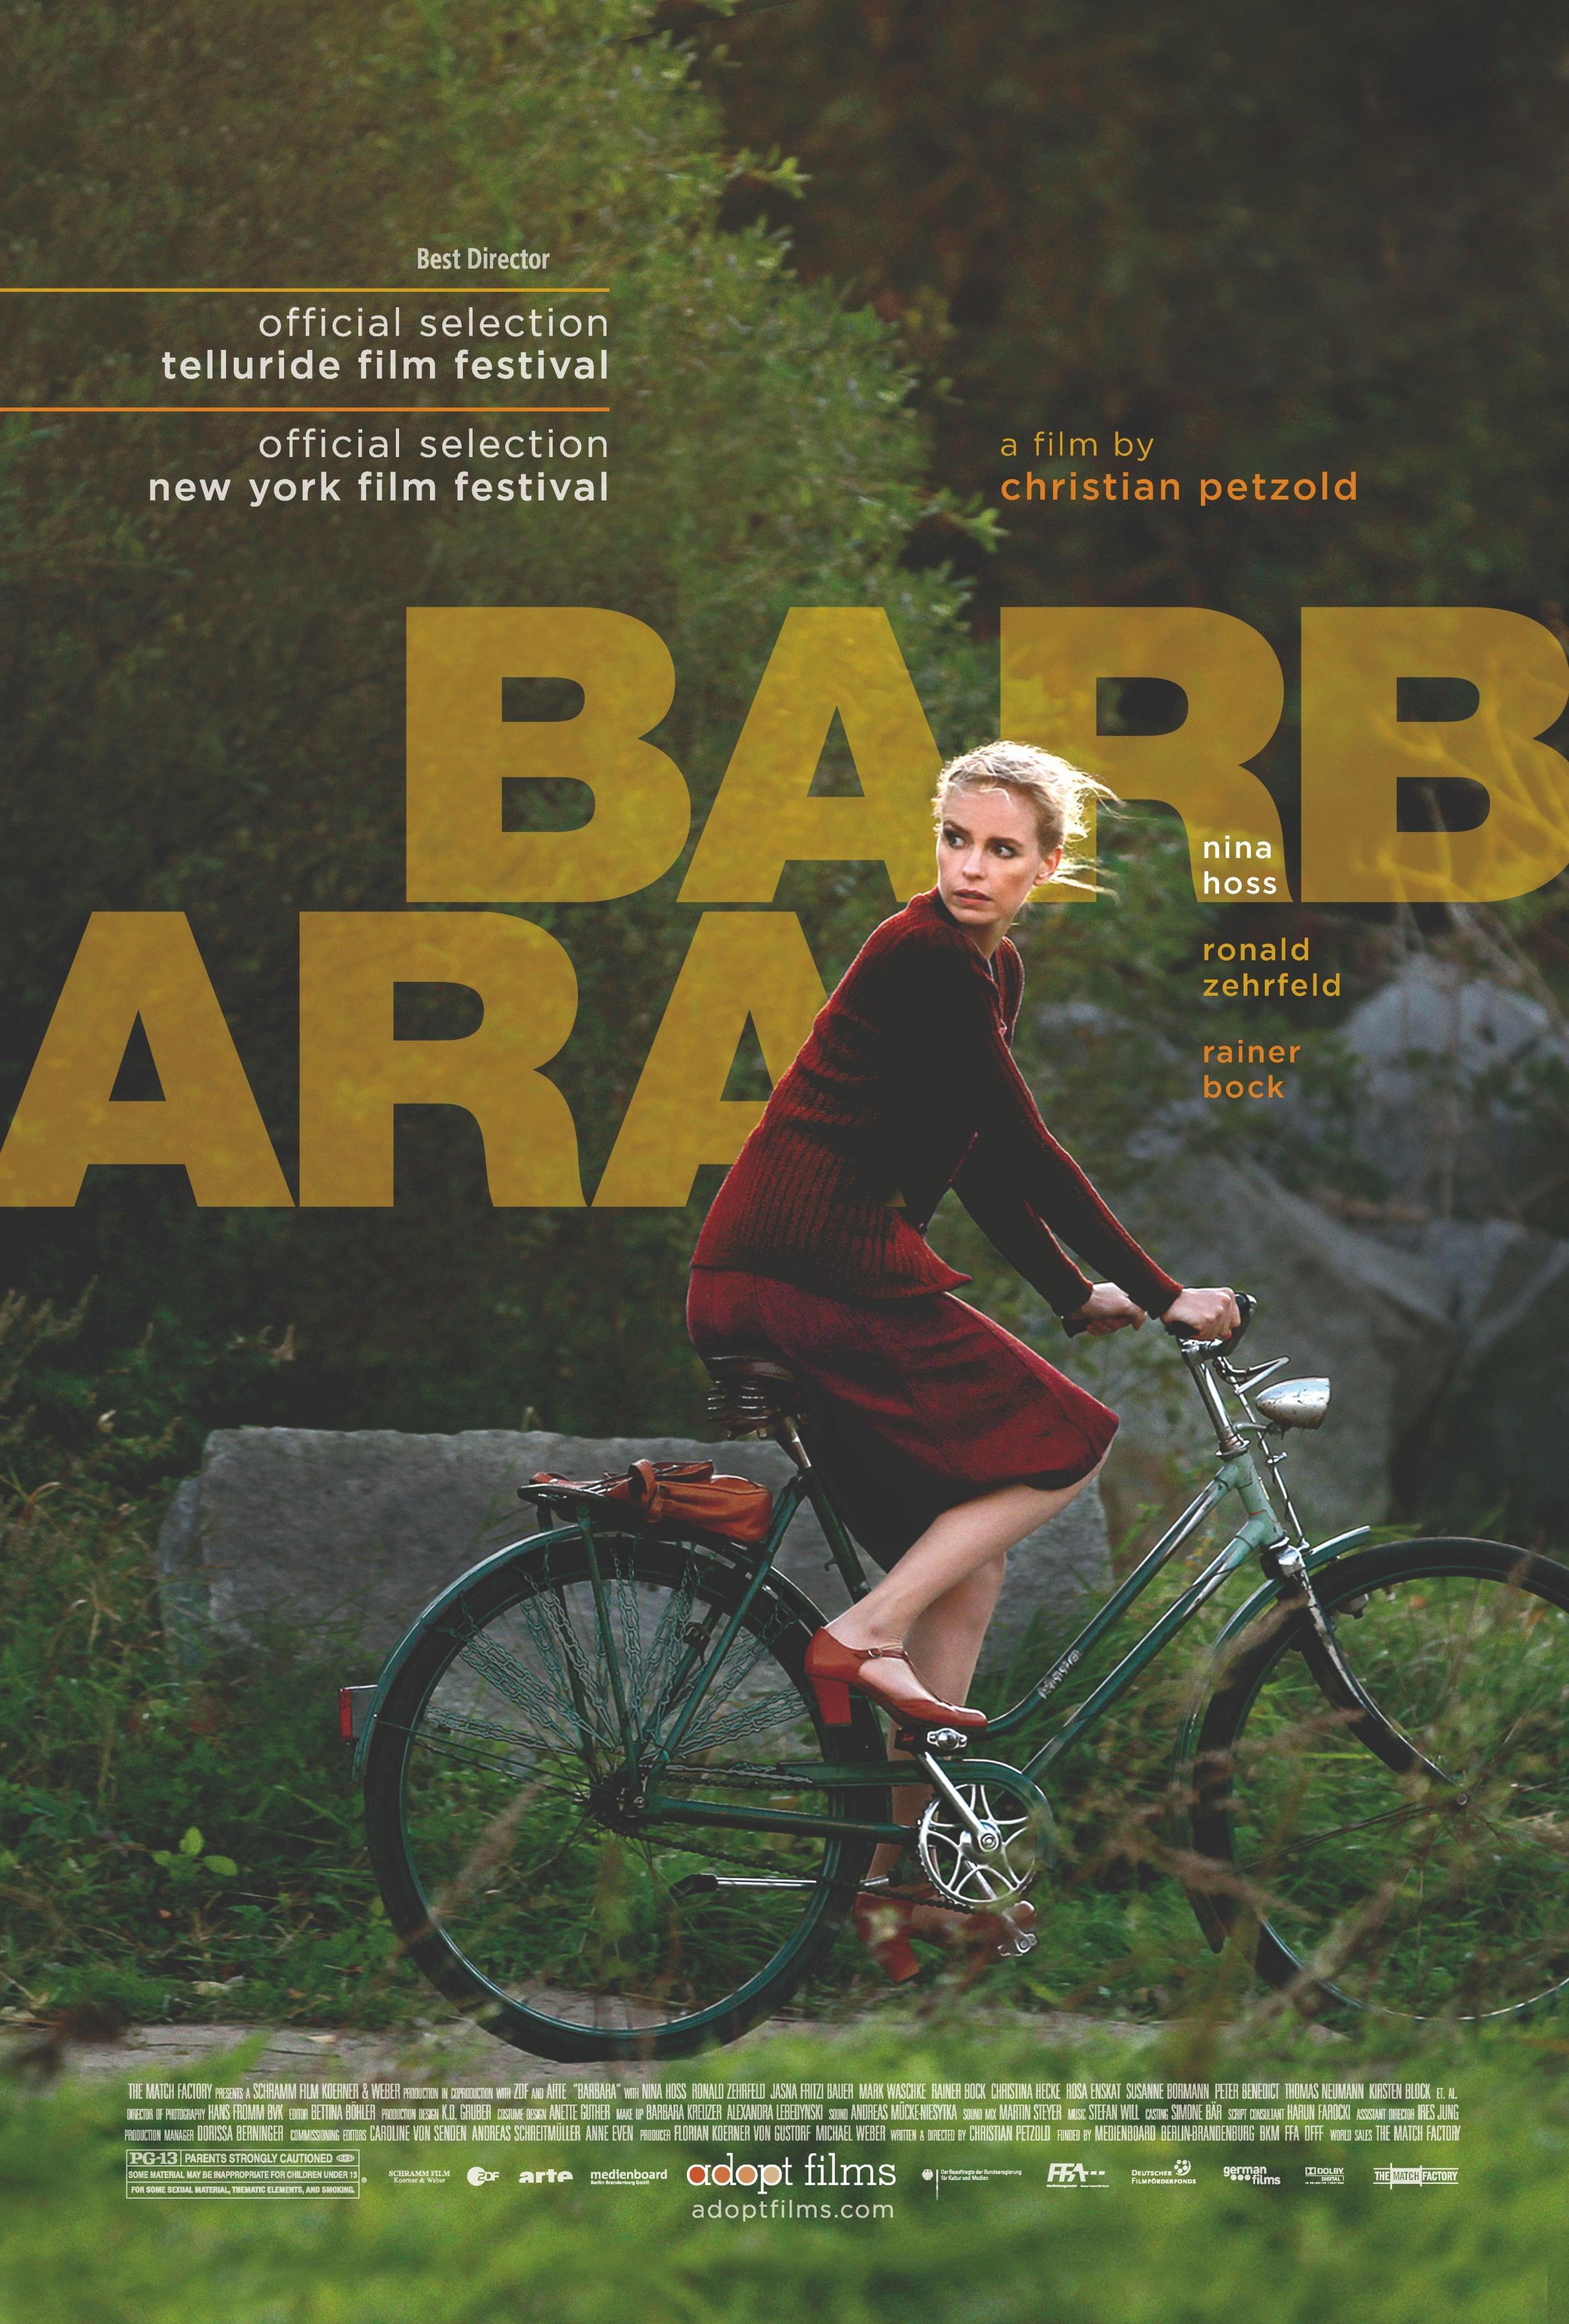 Постер фильма Барбара | Barbara